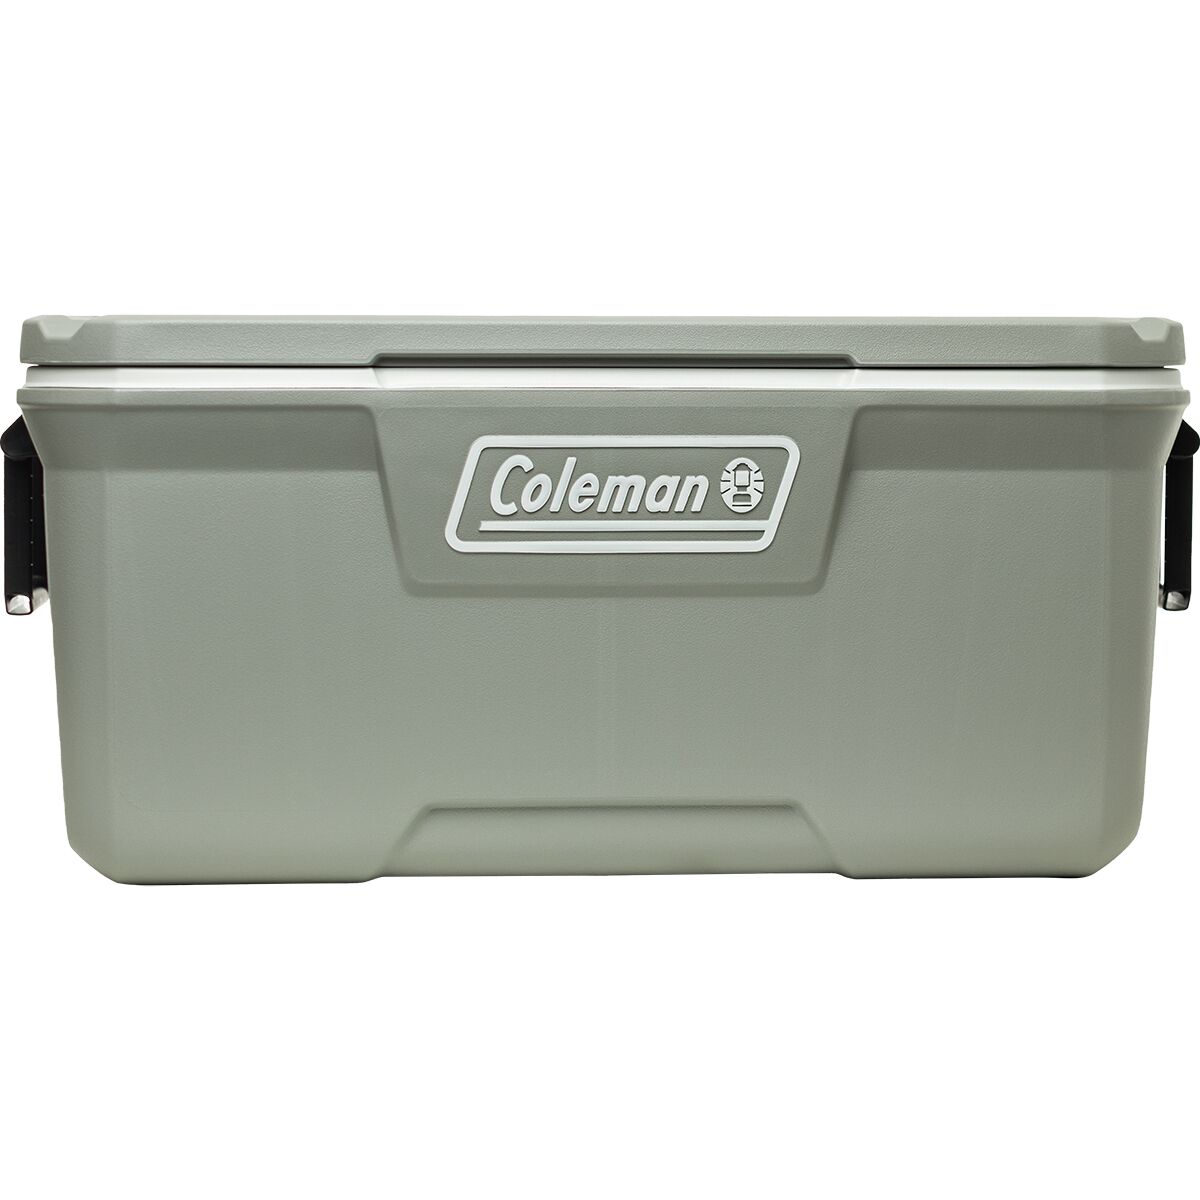 Coleman 316 Series 120QT Cooler